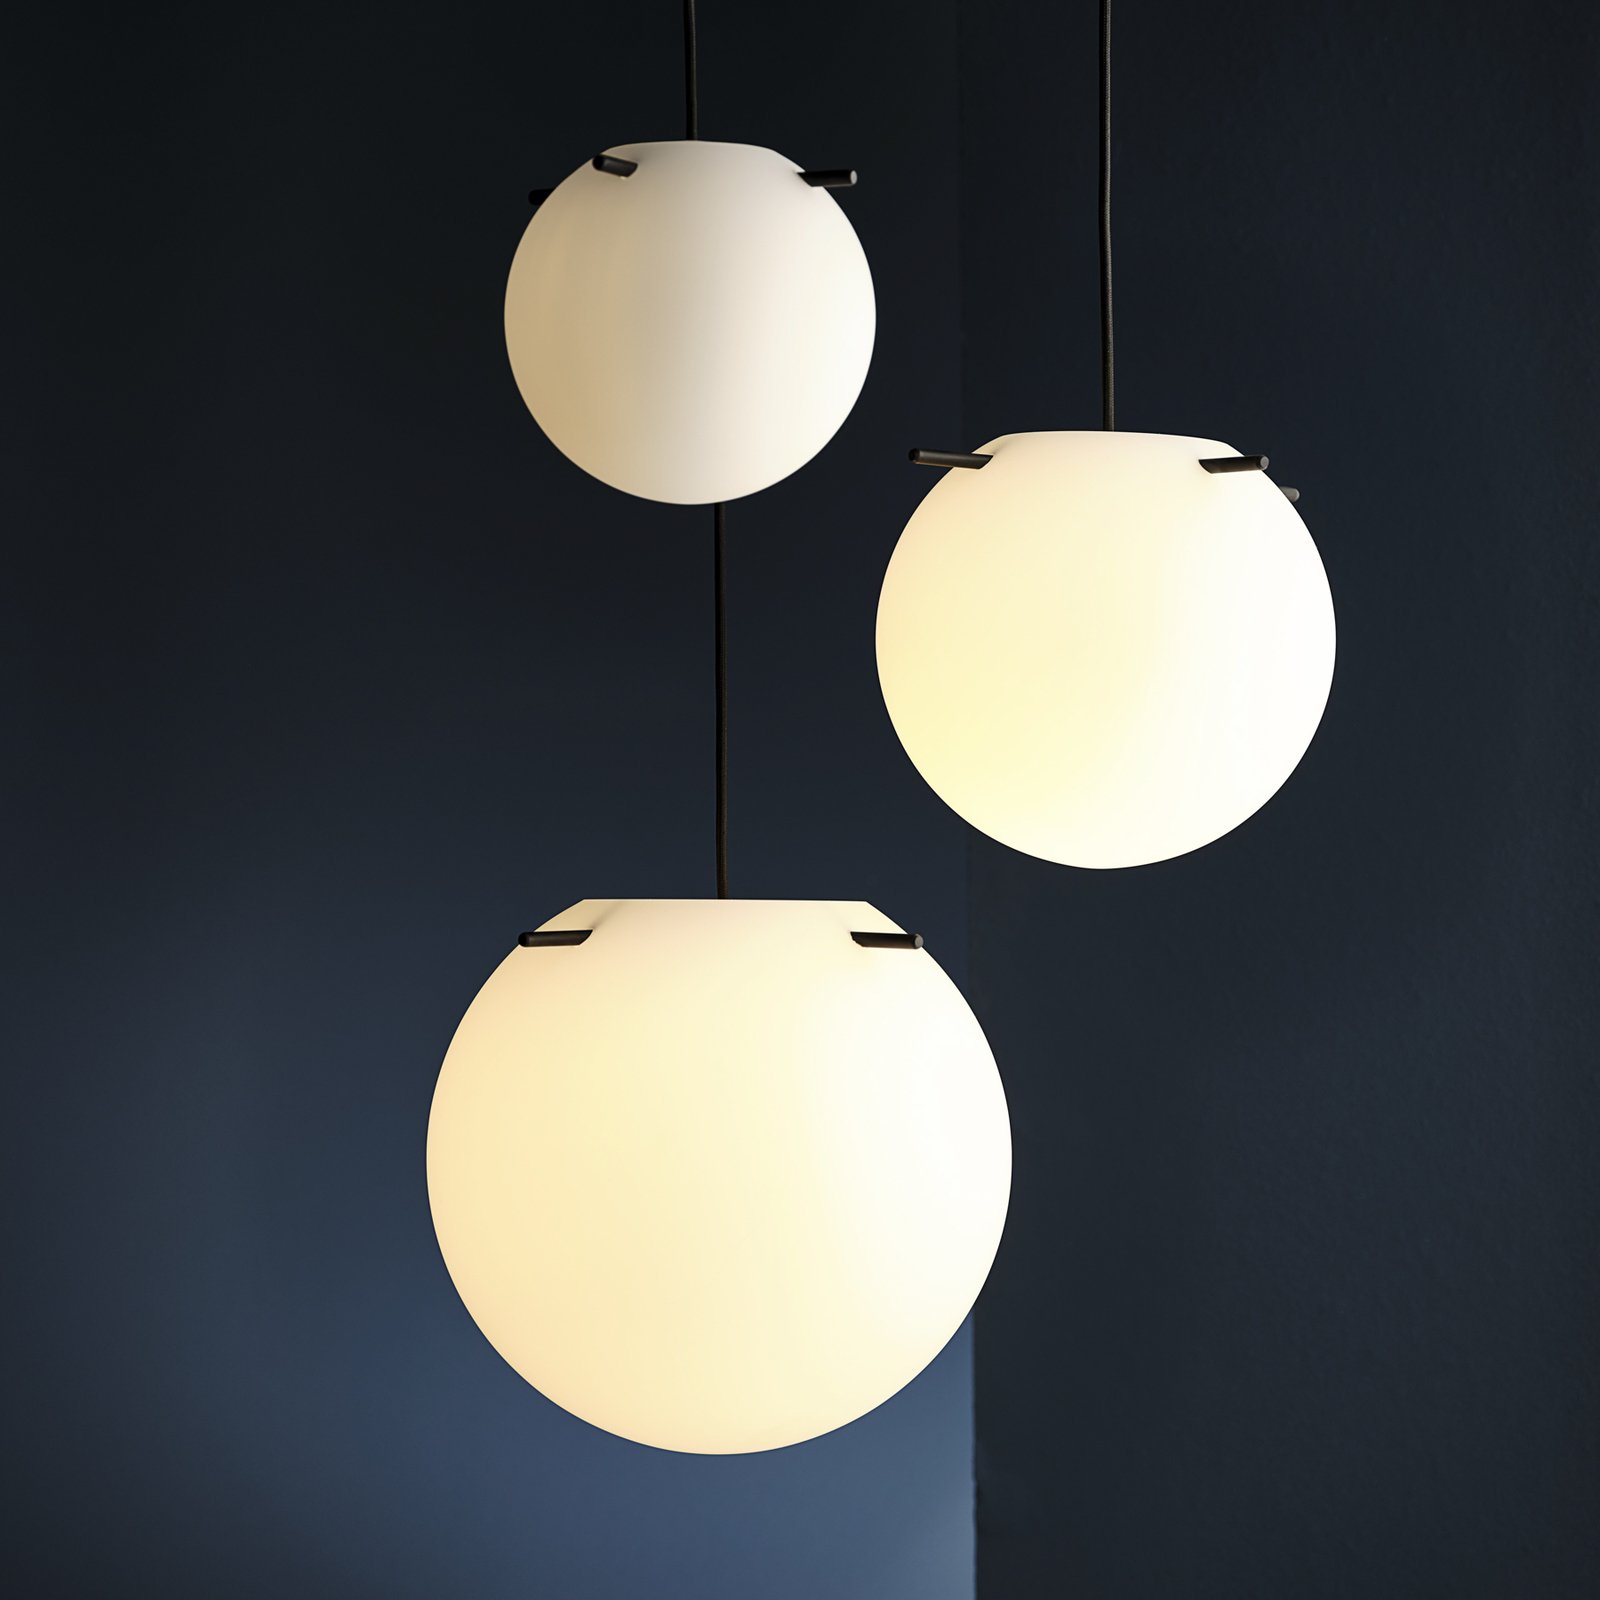 FRANDSEN hanglamp Koi, glas, wit/zwart, Ø 25 cm